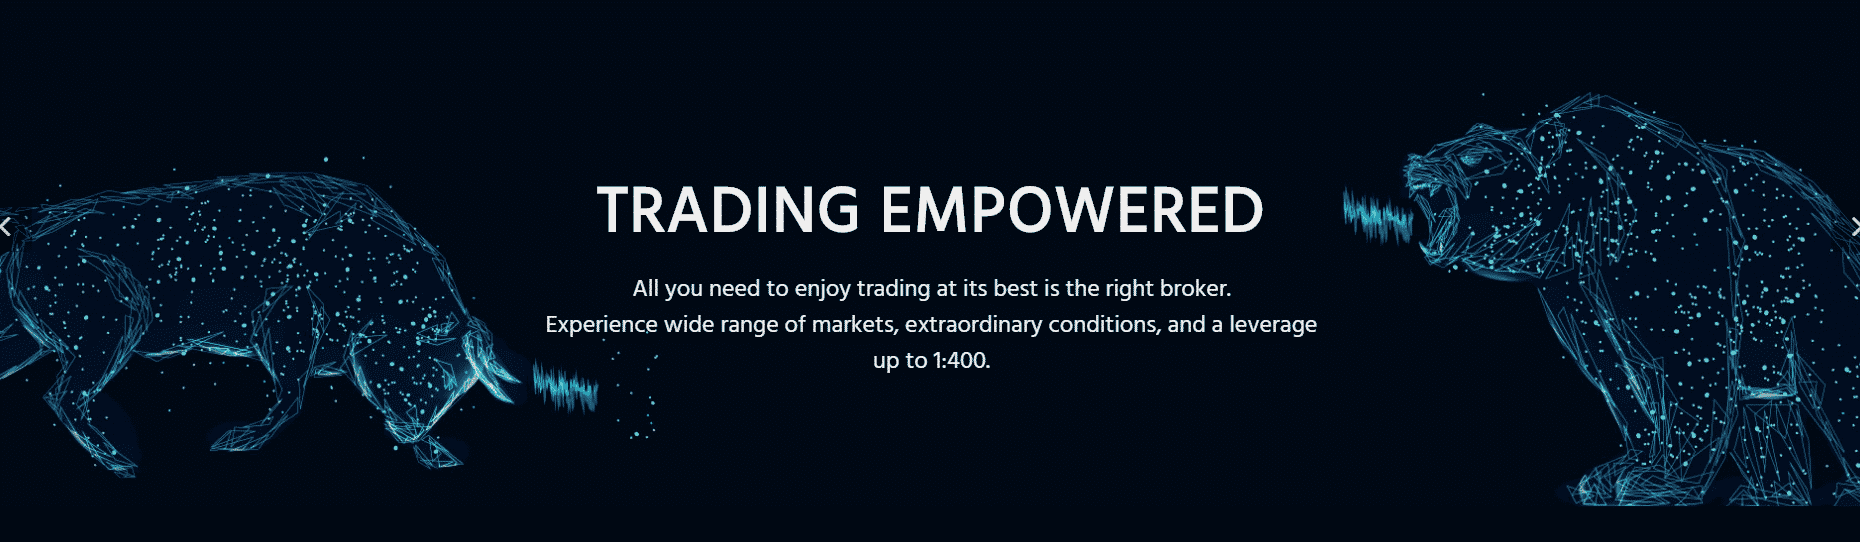 Fundiza: trading empowered